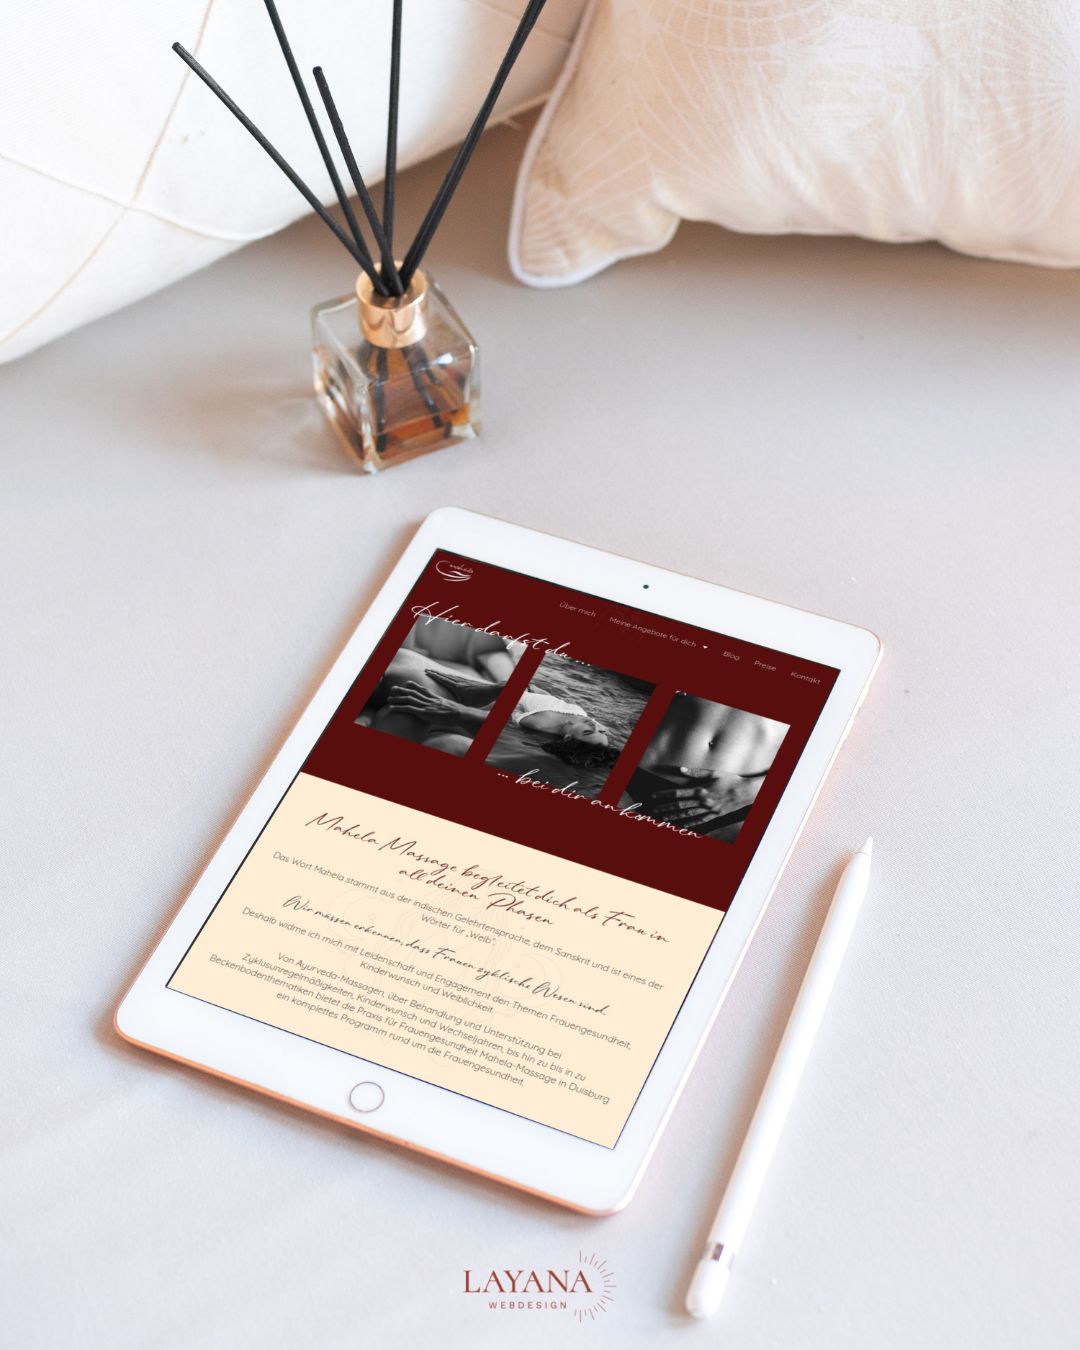 Gefühlvolles und modernes Webdesign der Website für Heilpraktikerin Mahela auf einem Tablet